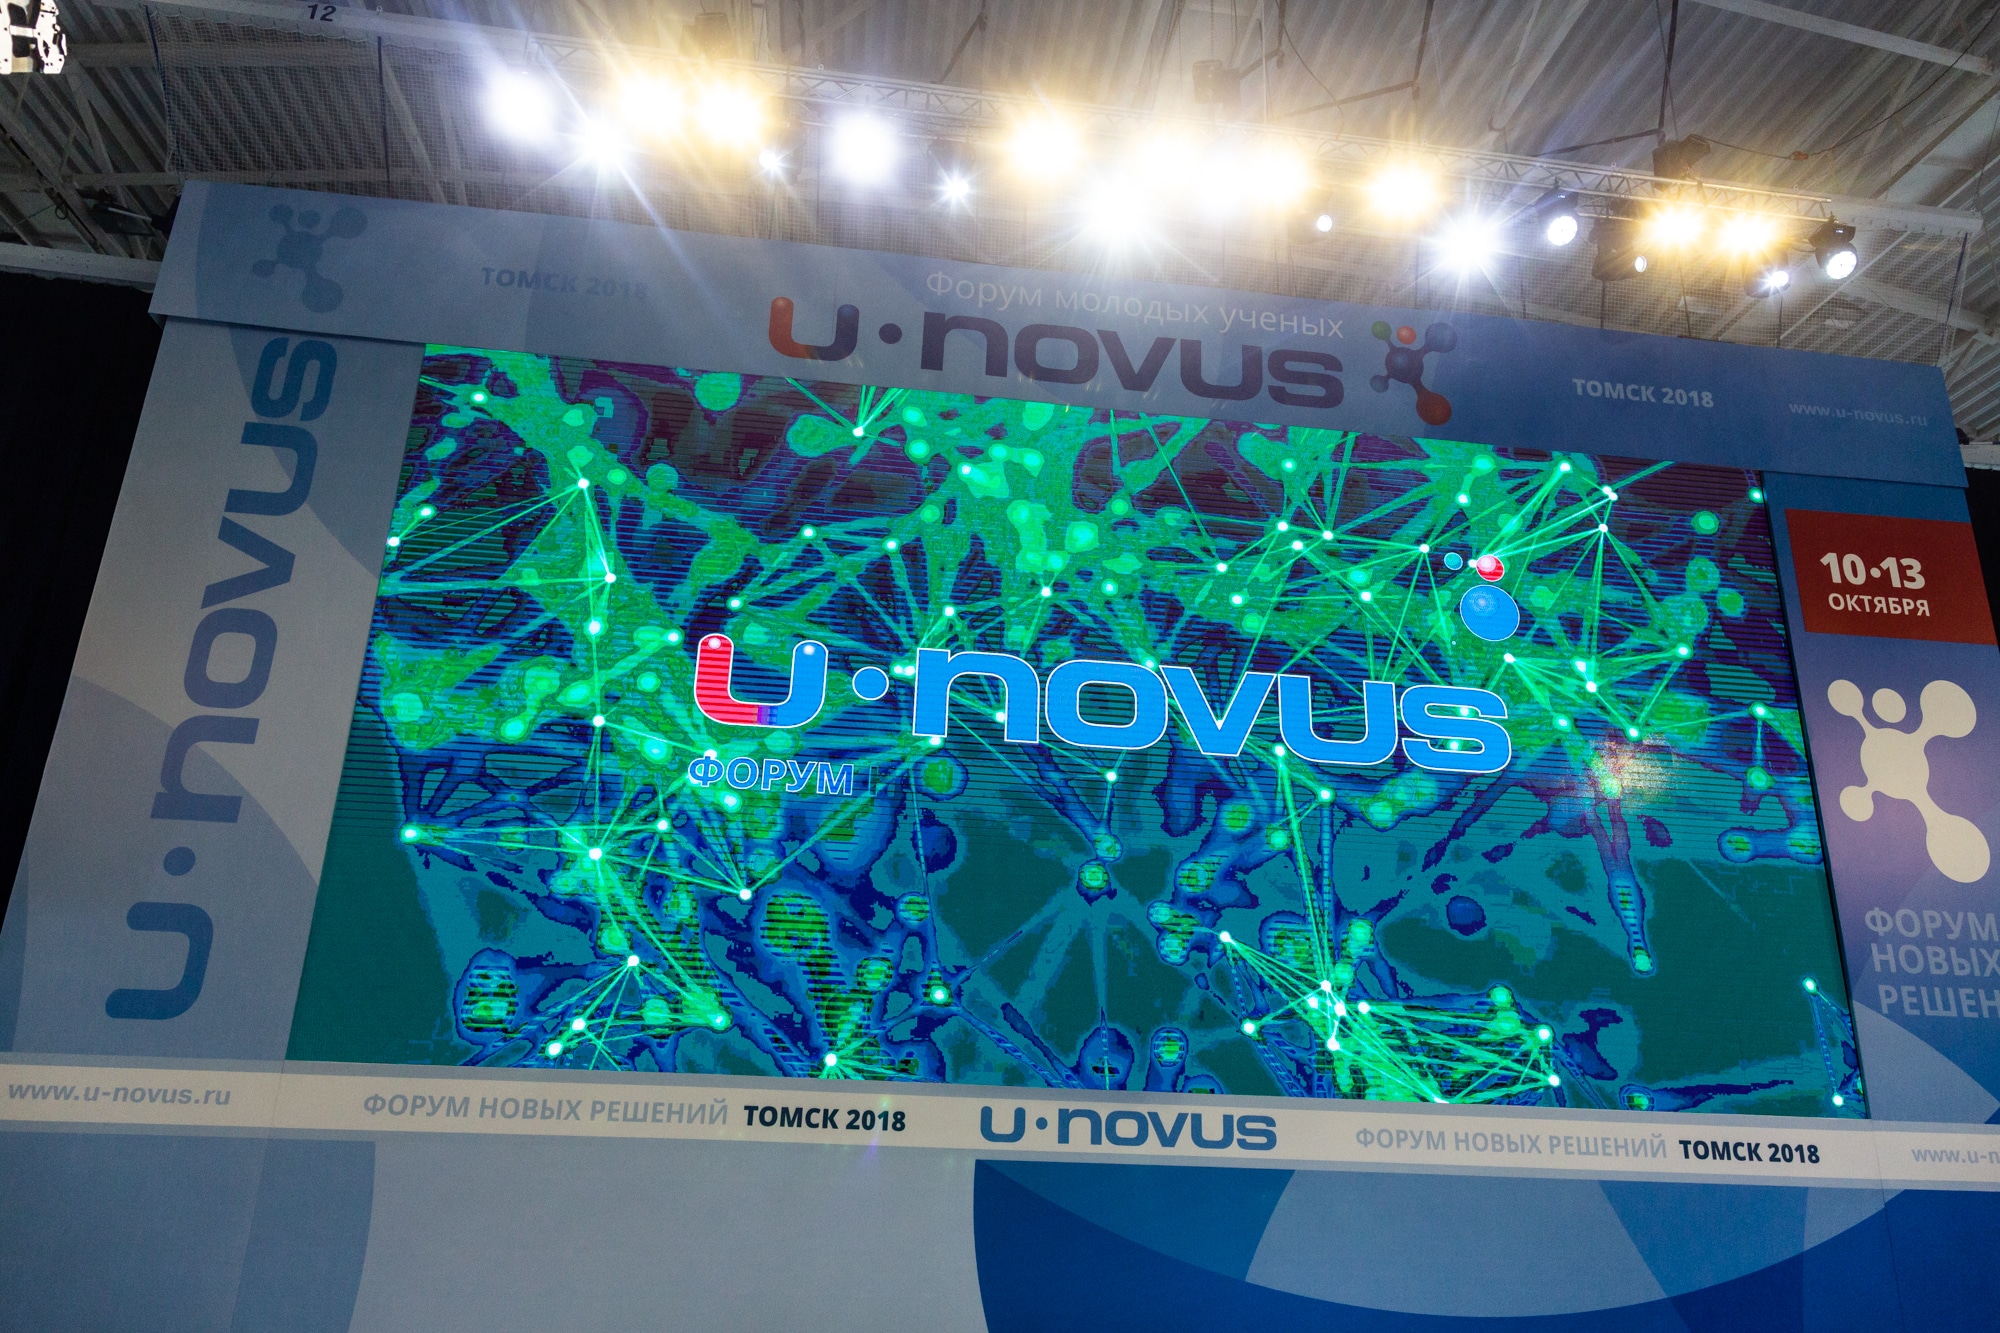 U-NOVUS, Томские новости, воркшоп 5г 6G Юновус ю-новус томские форумы для бизнеса На U-NOVUS – 2019 в Томске разработают программу для подготовки 5G-специалистов